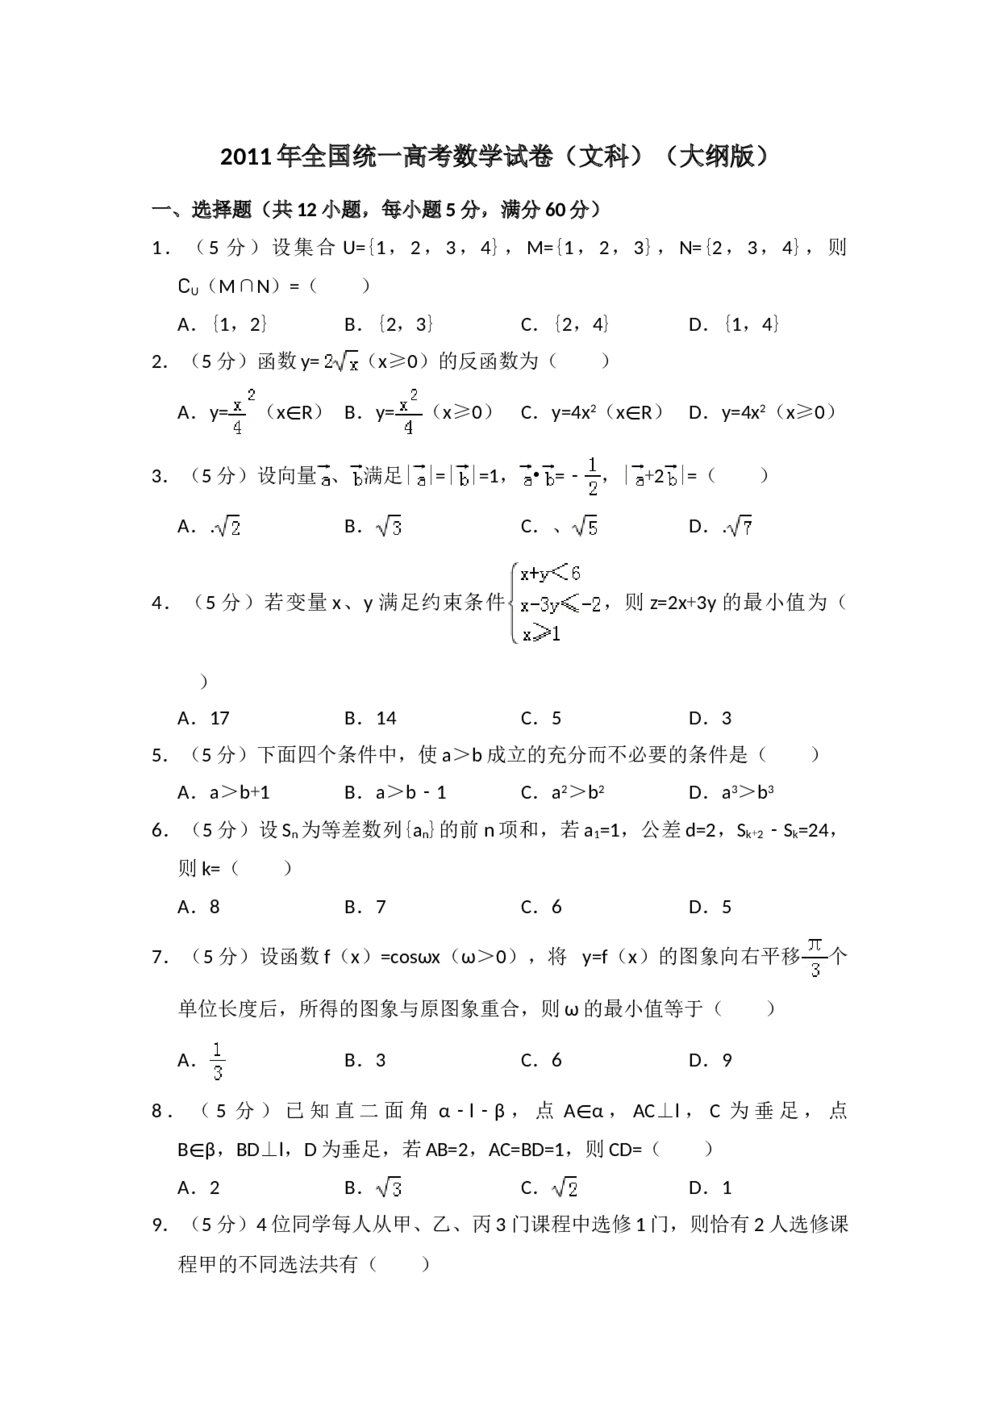 2011年全国统一高考数学试卷(文科)(大纲版)+(答案解析)